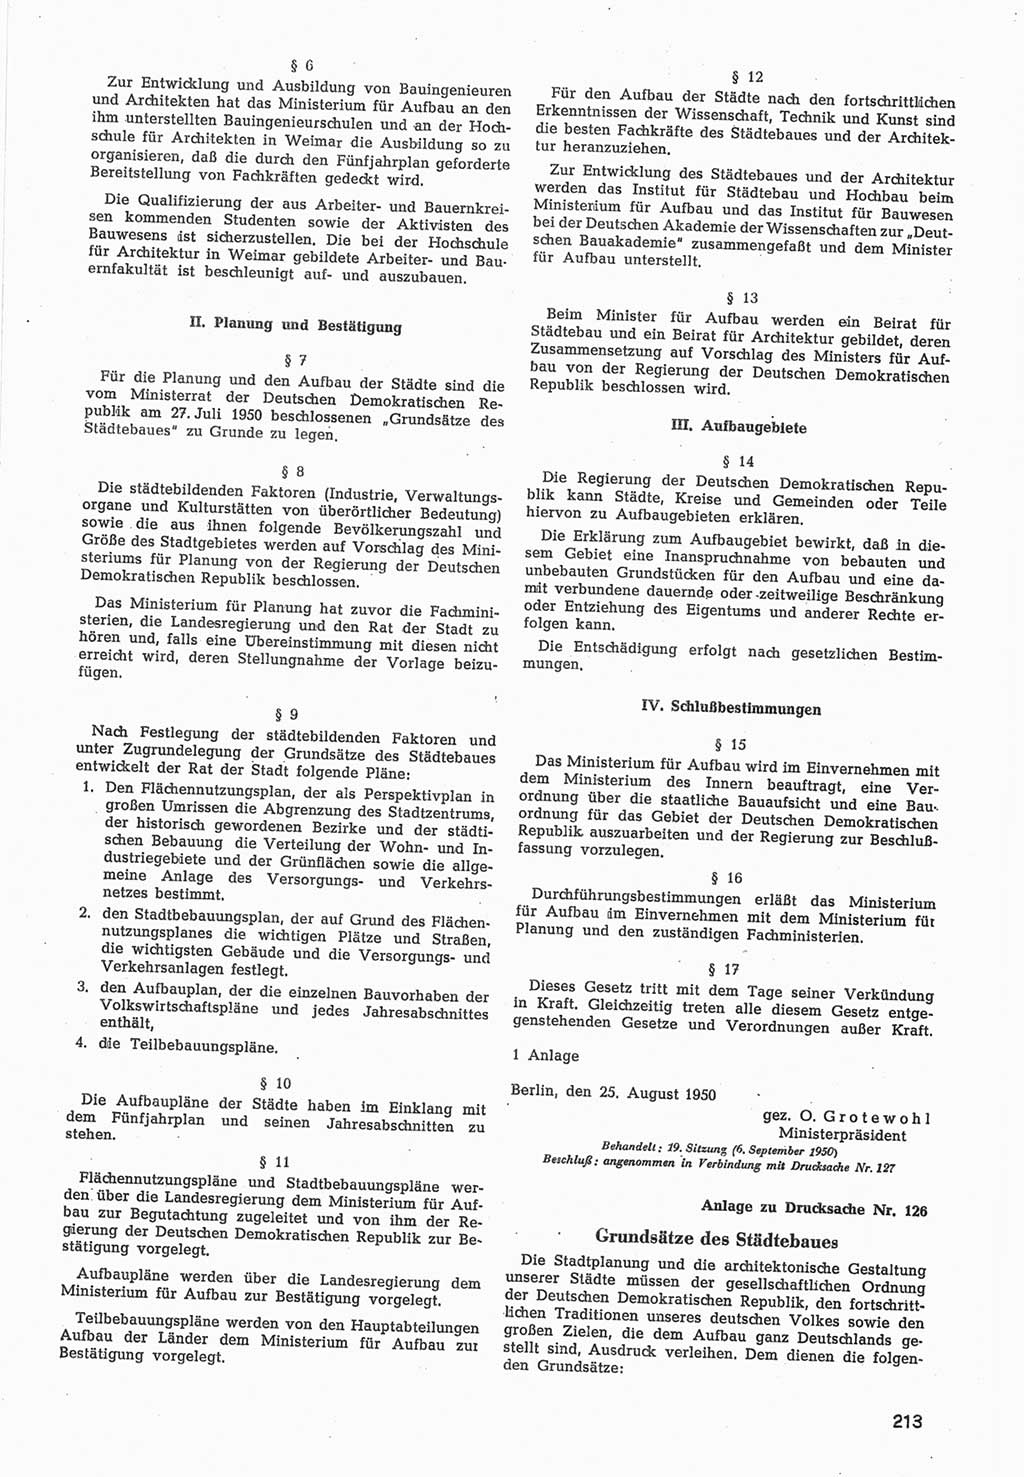 Provisorische Volkskammer (VK) der Deutschen Demokratischen Republik (DDR) 1949-1950, Dokument 815 (Prov. VK DDR 1949-1950, Dok. 815)